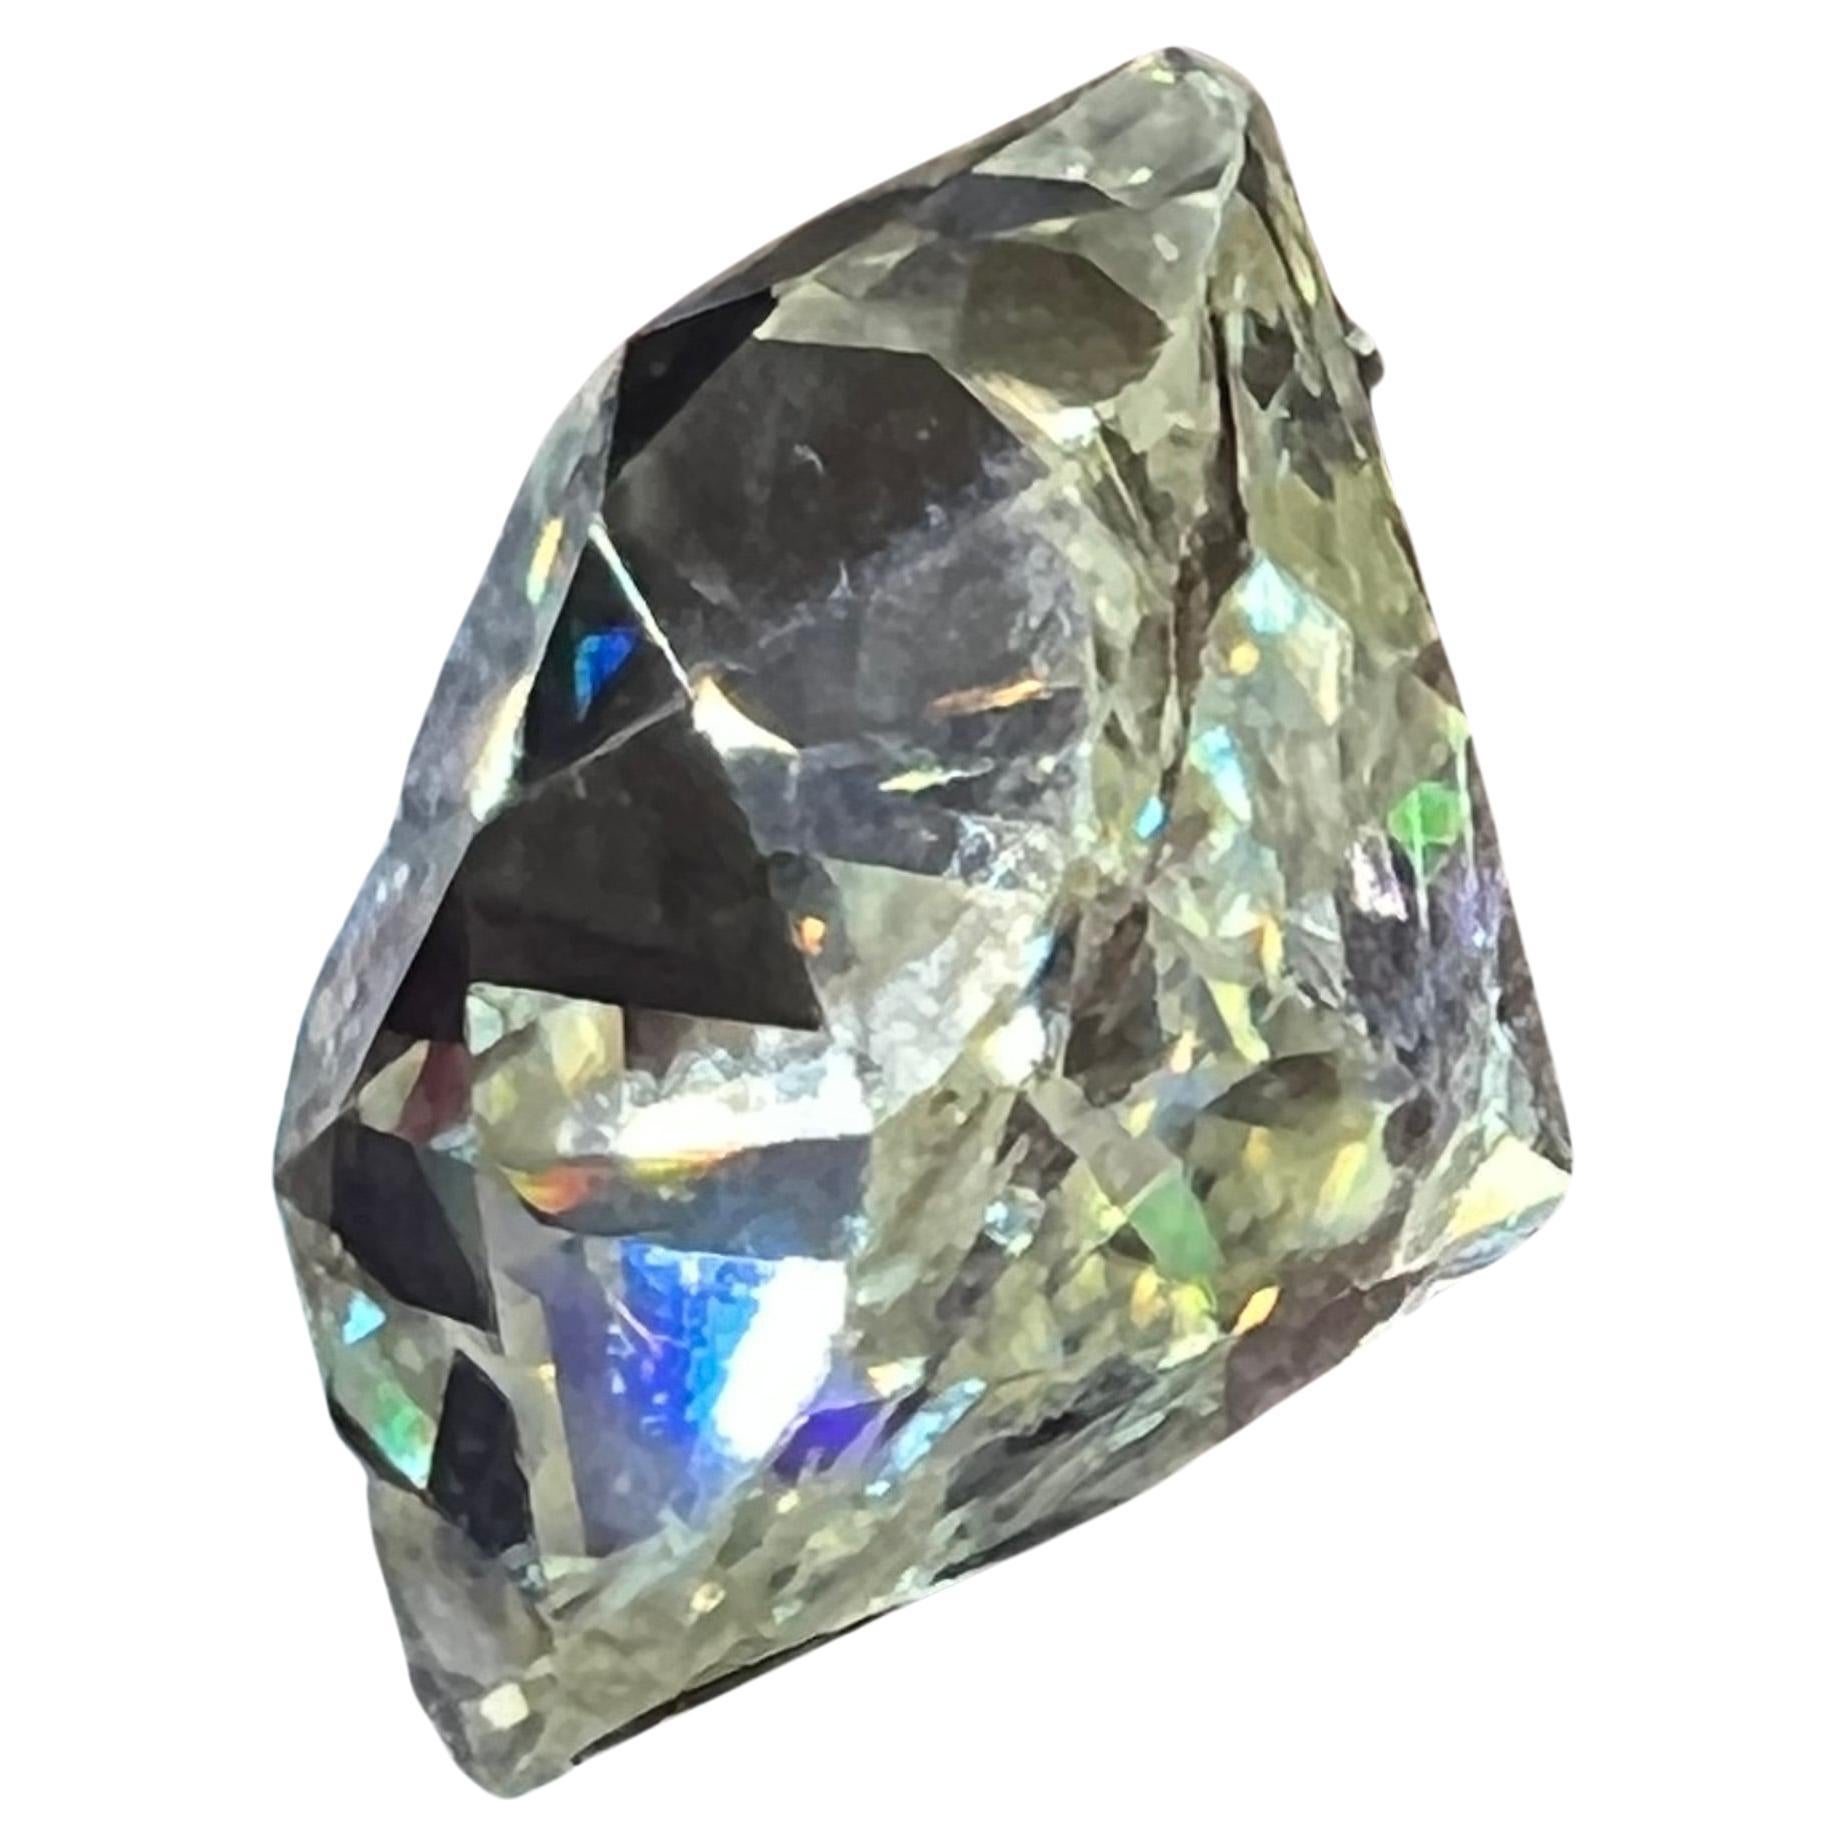 Diamant taille ancienne de 3,08 carats
couleur estimée M et clarté VS
Taille estimée du rond : 0,92 cm par 0,87 cm